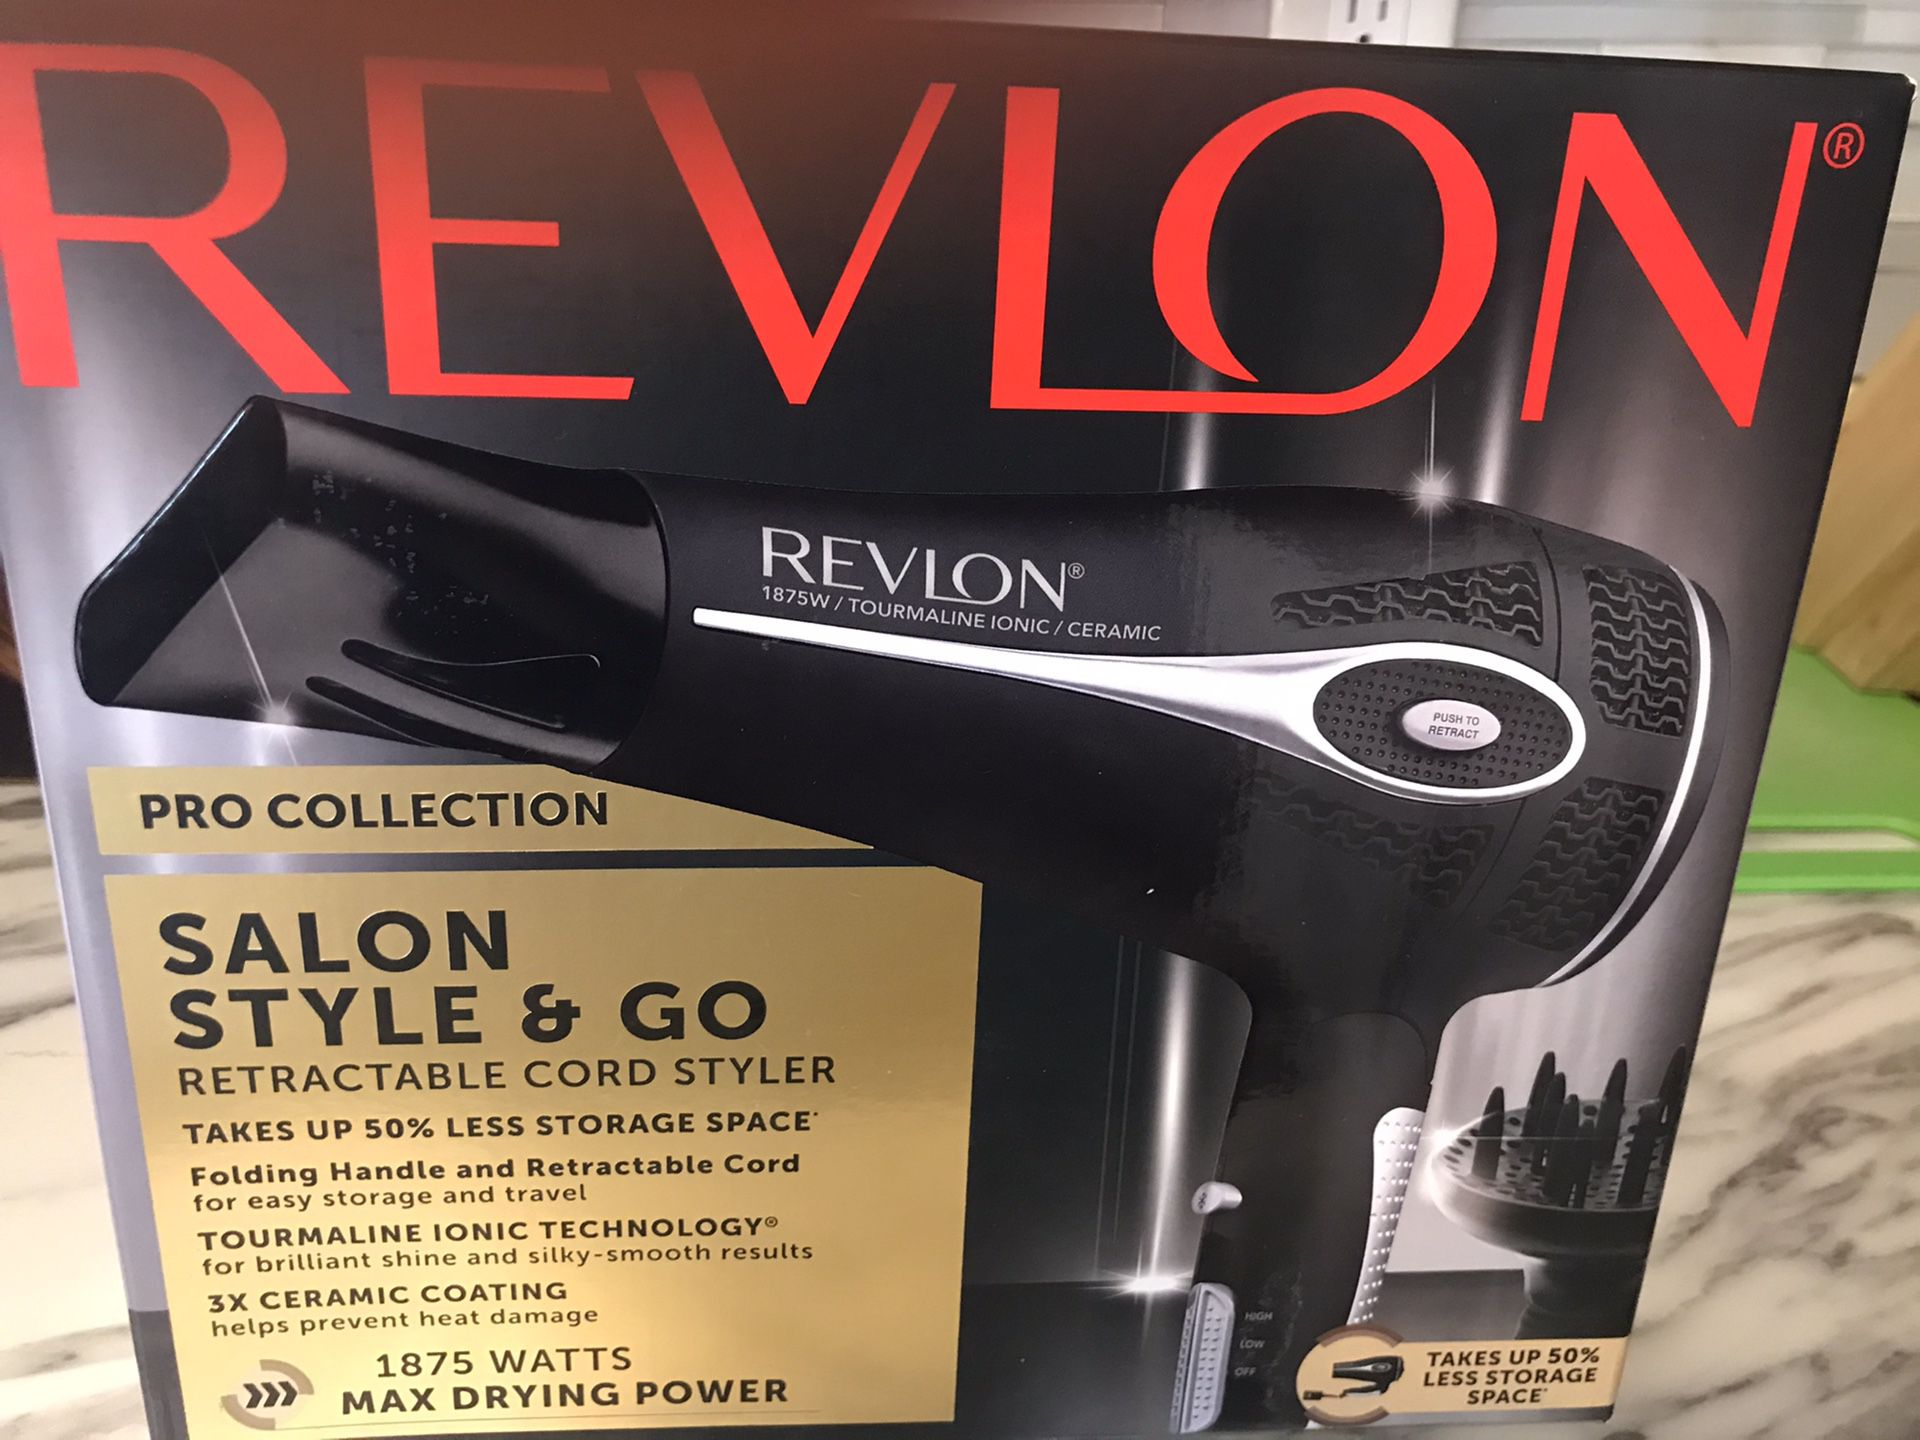 Revlon style & go